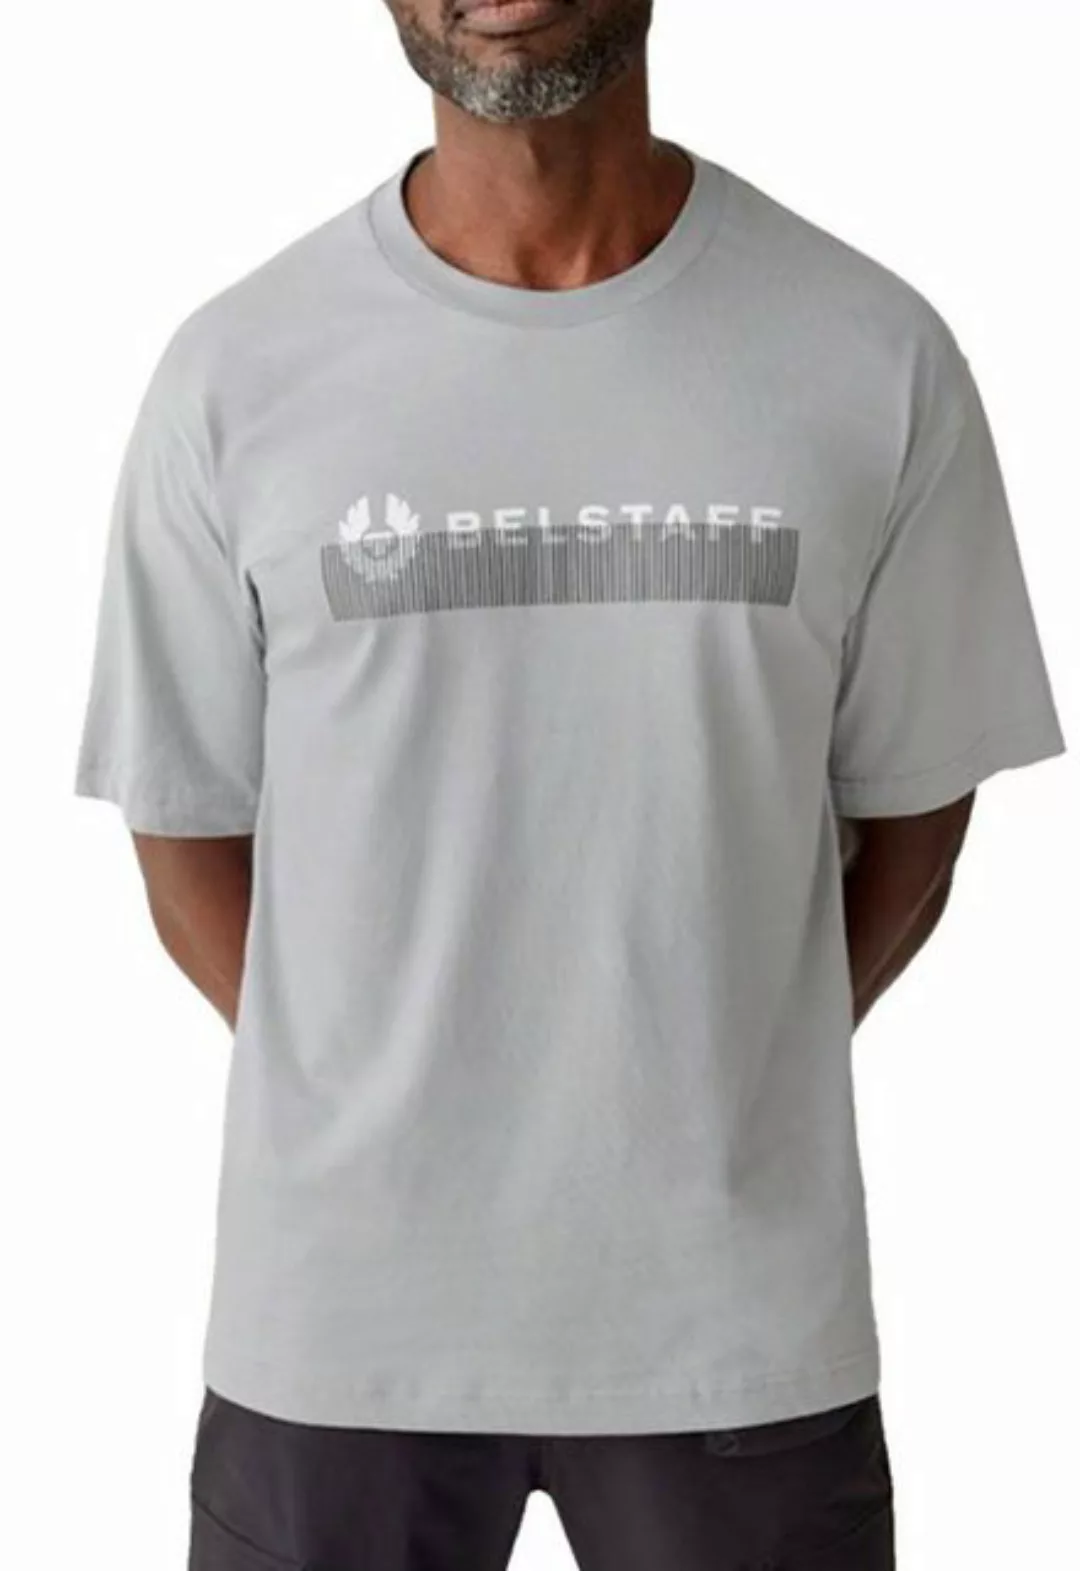 Belstaff T-Shirt T-Shirt England 1924 Signature Logo Retro Phoenix Tee günstig online kaufen